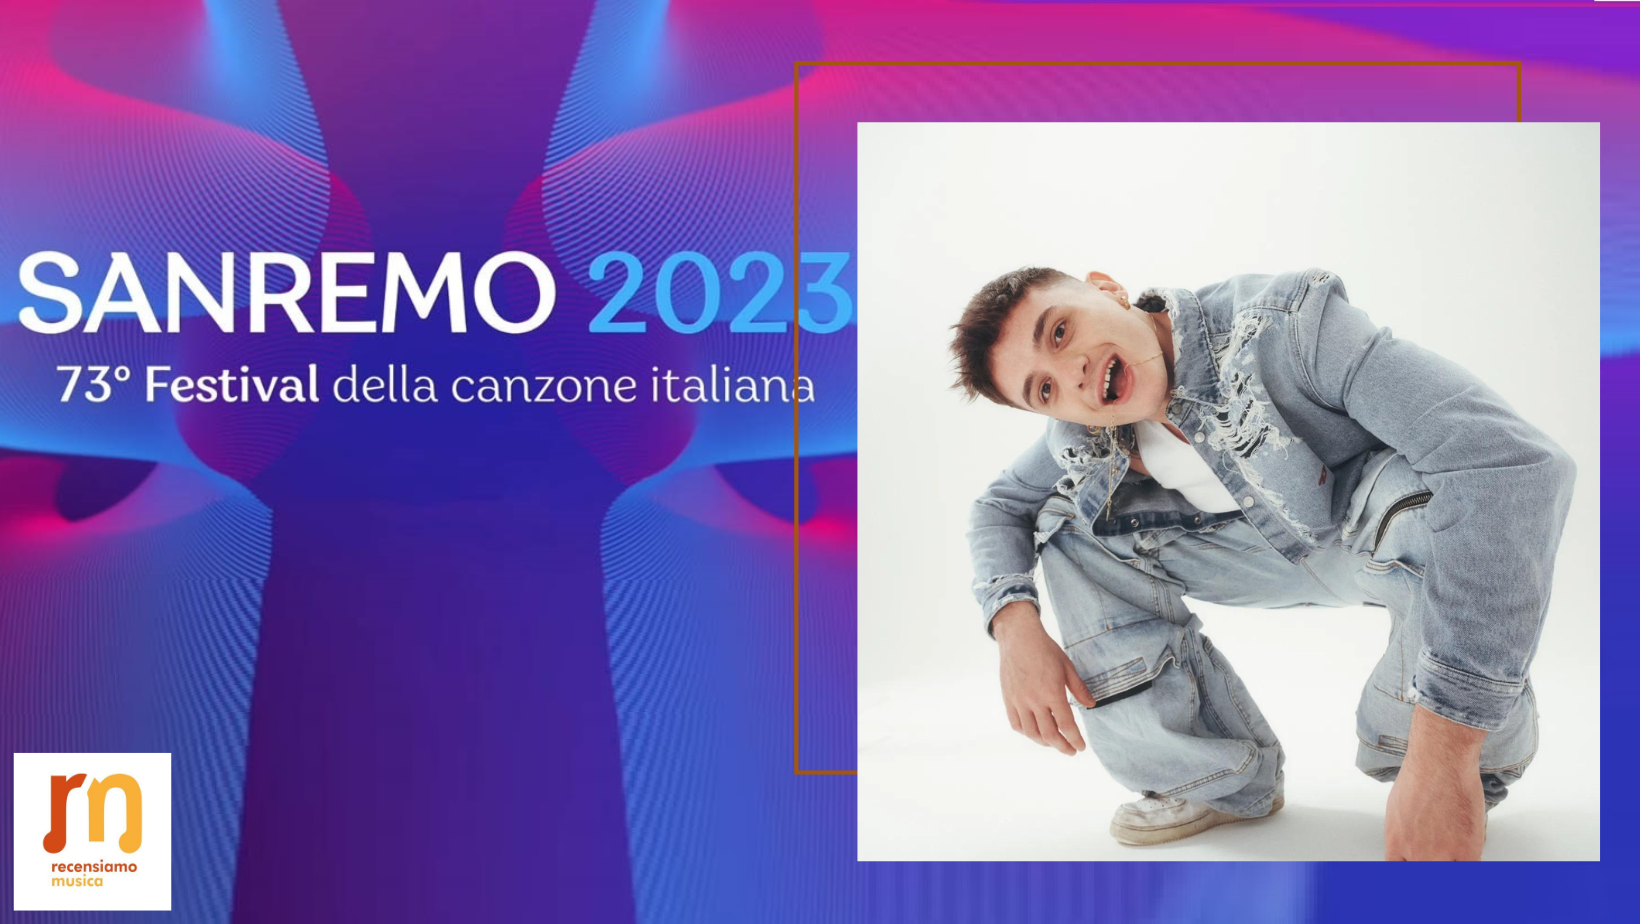 Olly Sanremo 2023